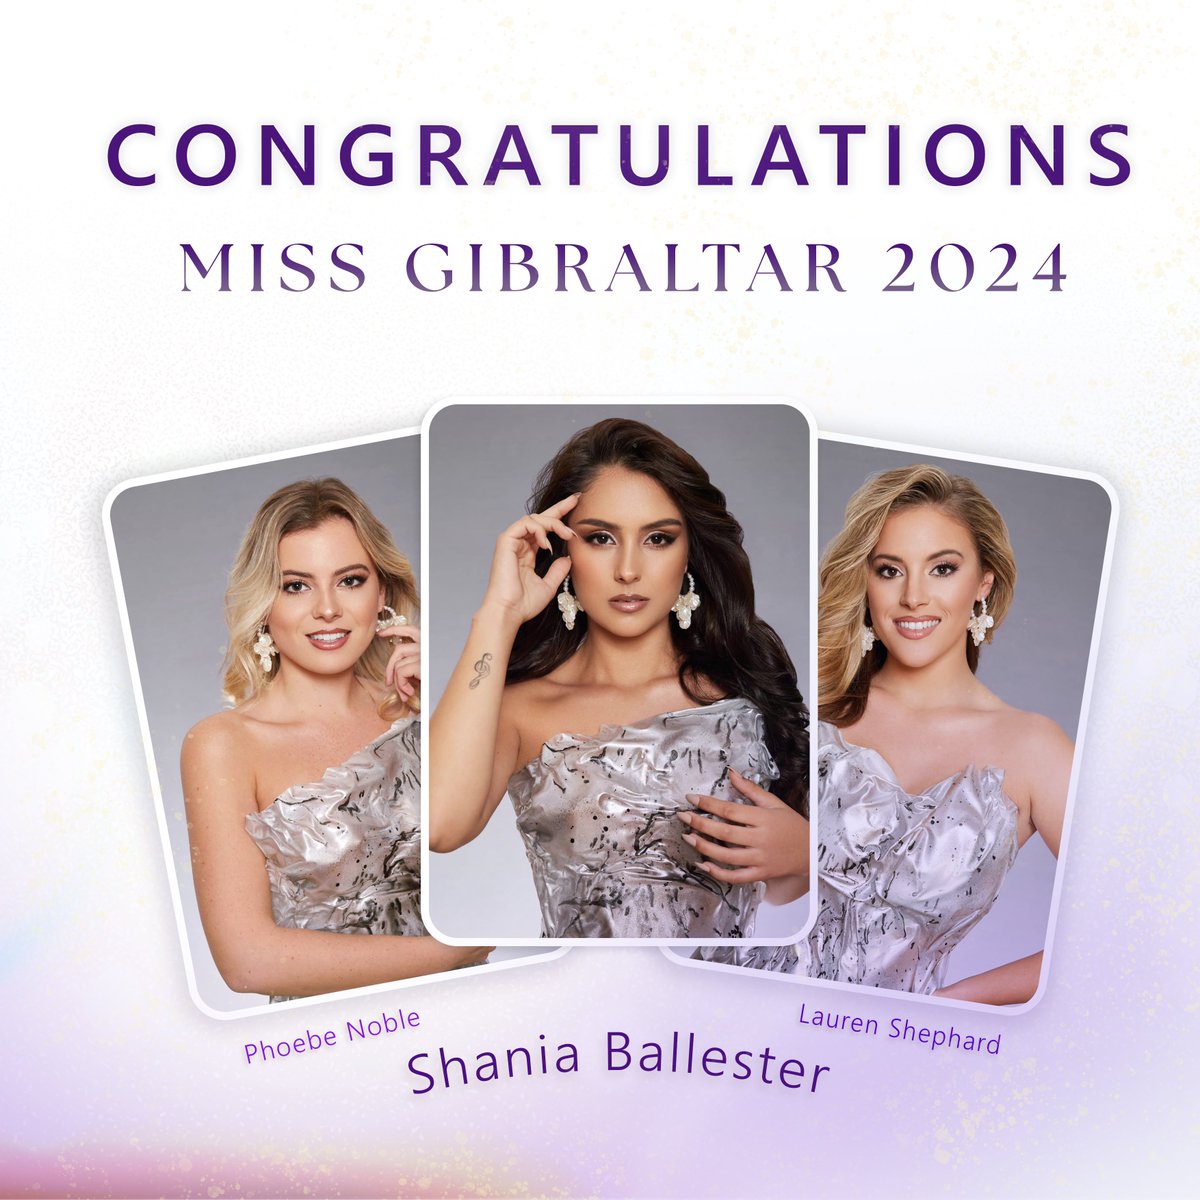 Congratulations to Miss Gibraltar 2024 winner Shania Ballester, first princess Pheobe Noble, and second princess Lauren Shepherd! 👑 #MissGibraltar2024